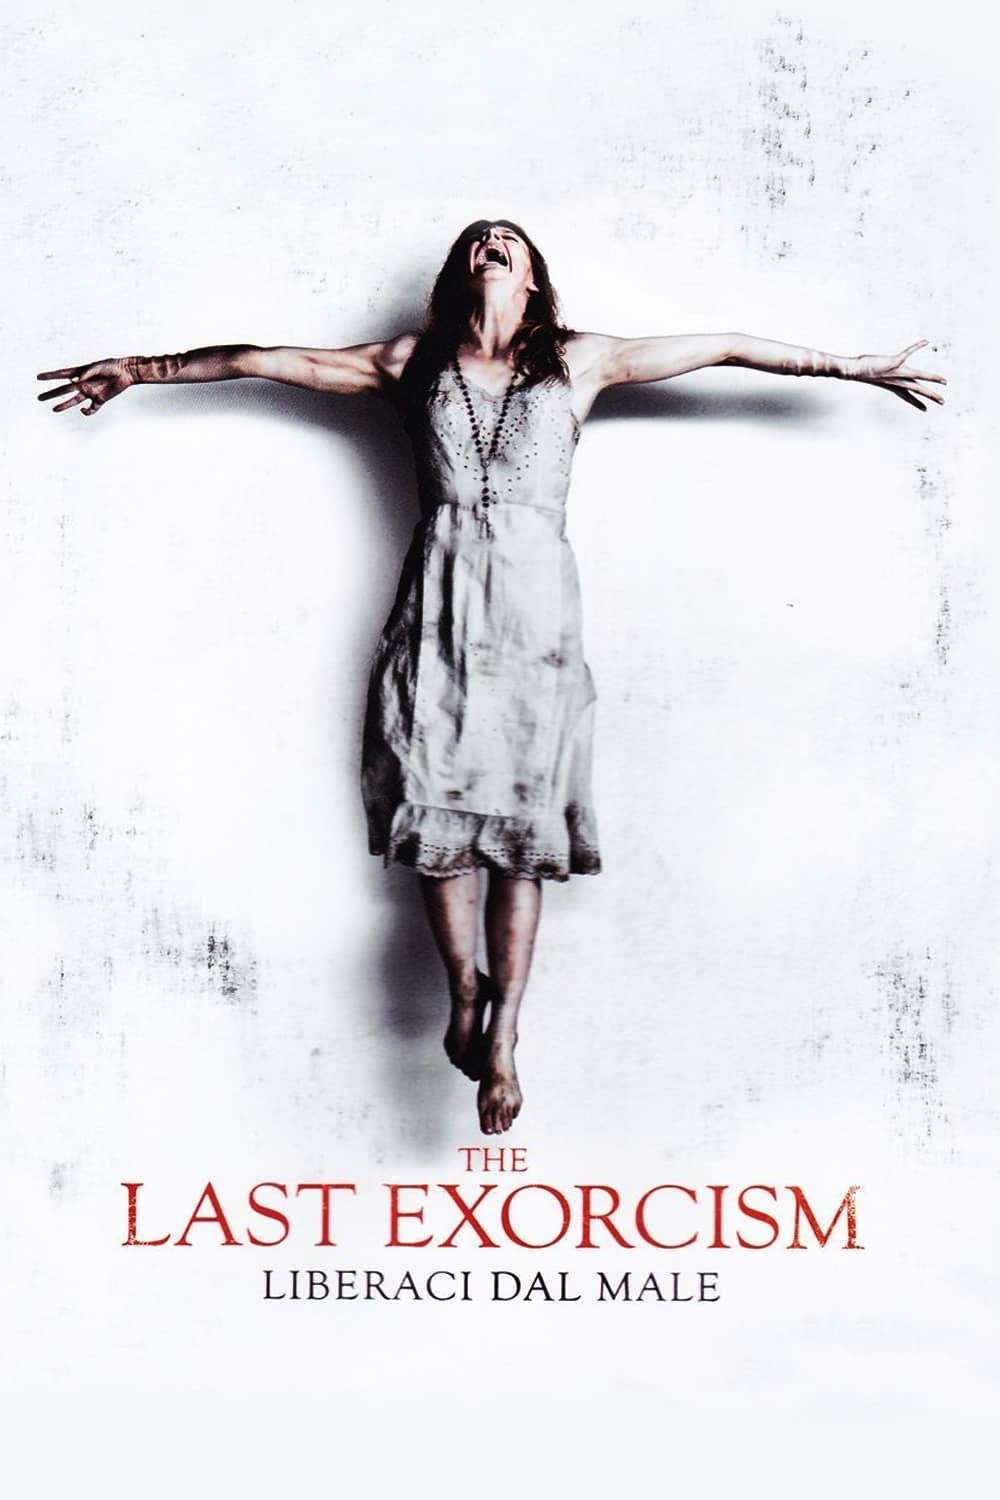 The Last Exorcism – Liberaci dal male [HD] (2013)